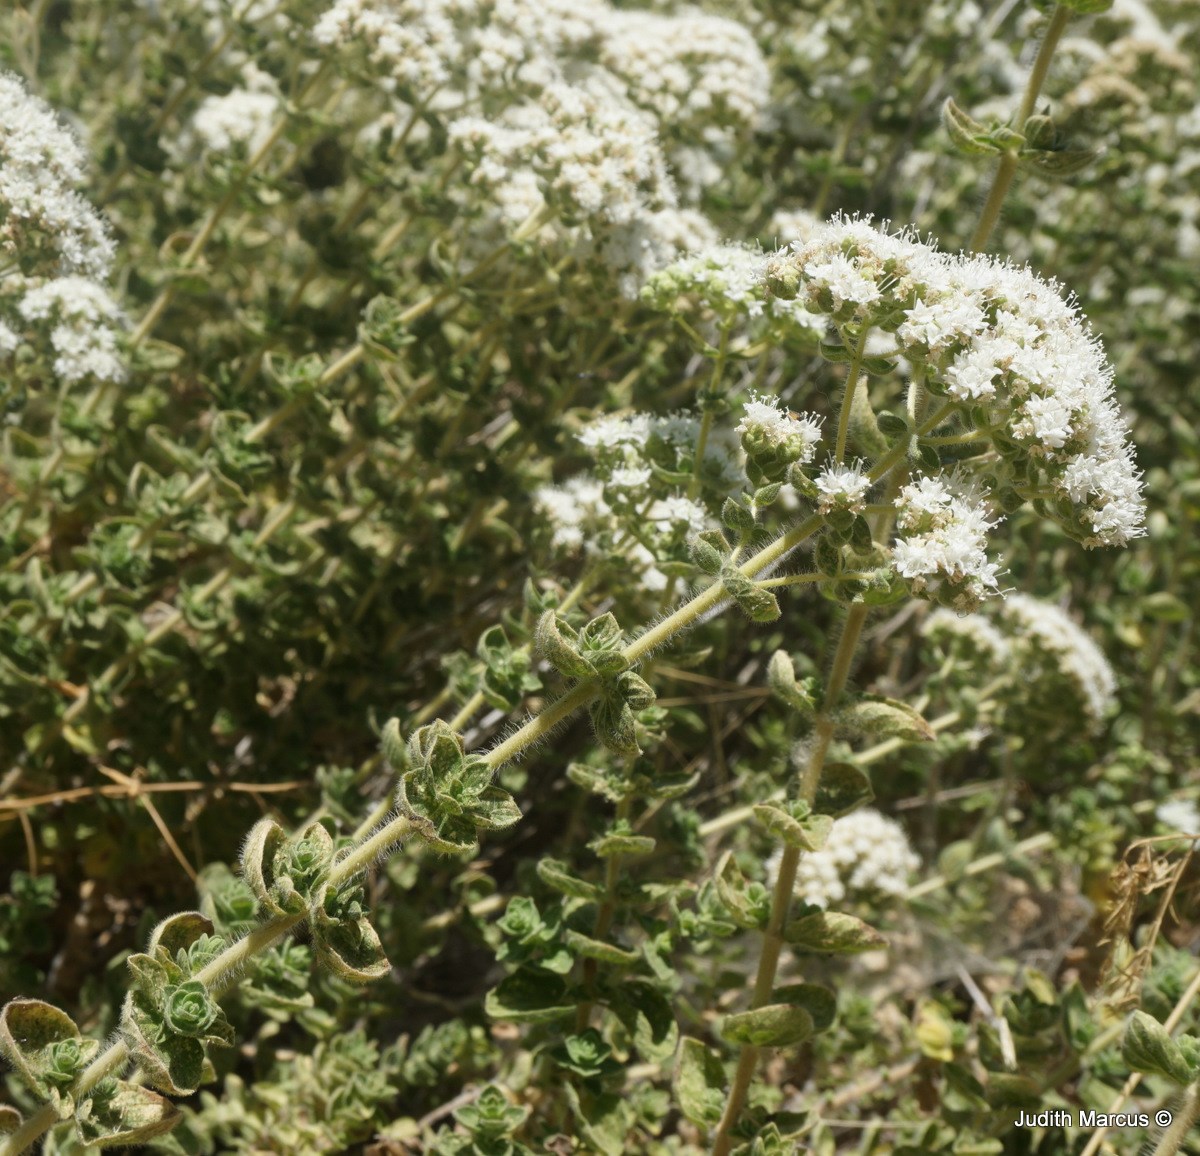 Origanum vulgare - Common Oregano, Wild Marjoram, אזובית פשוטה, אזובית פשוטה